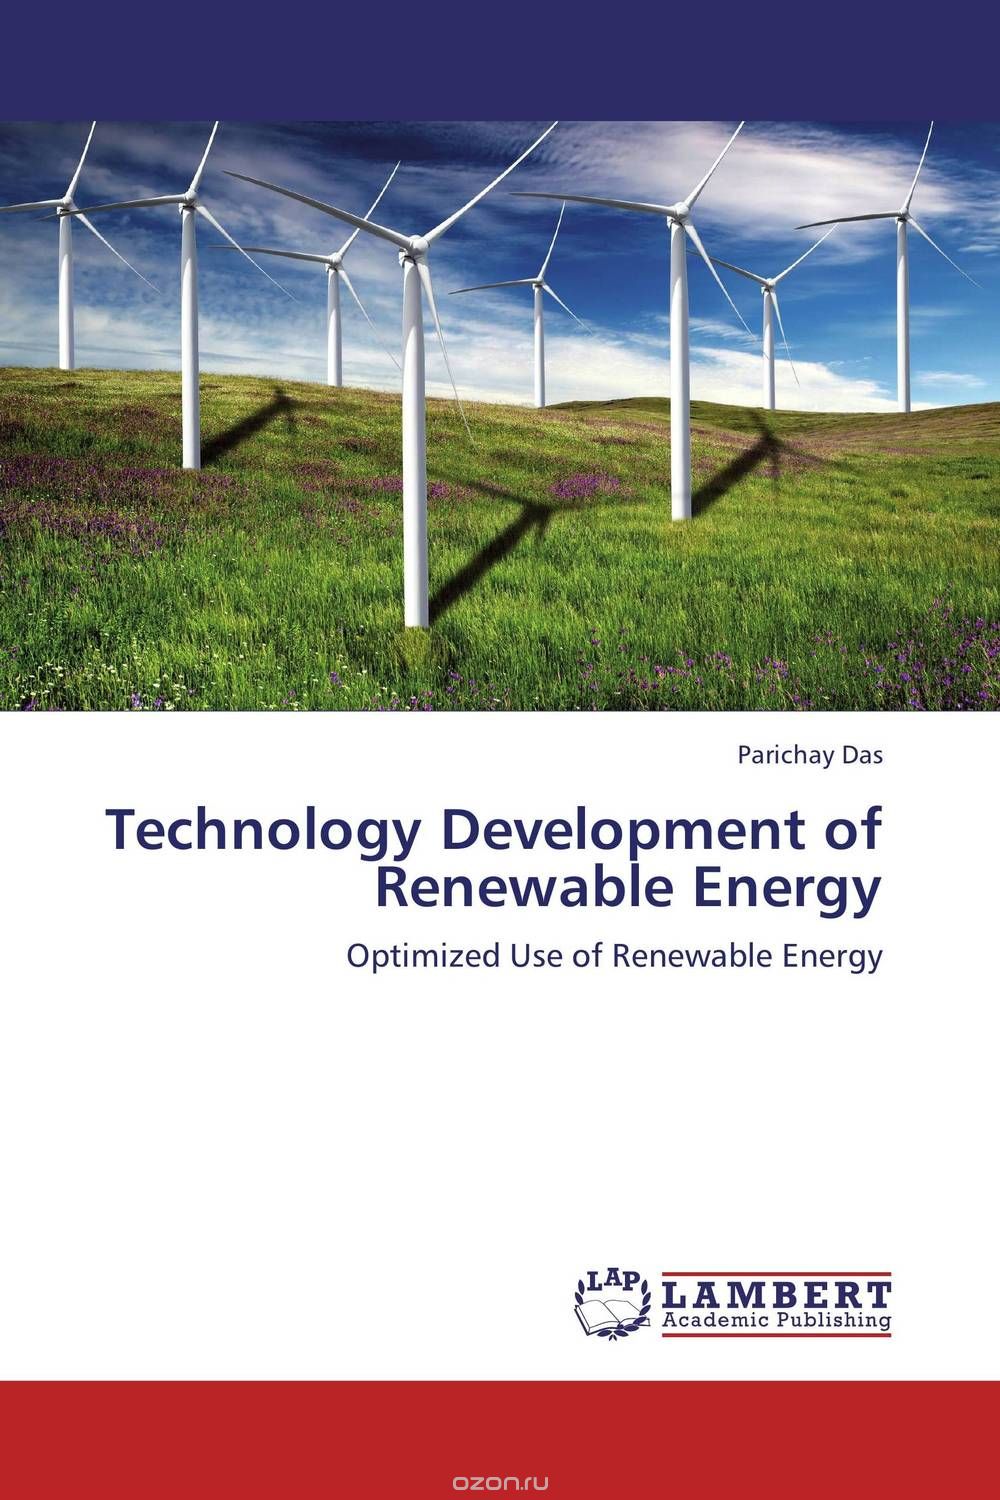 Скачать книгу "Technology Development of Renewable Energy"